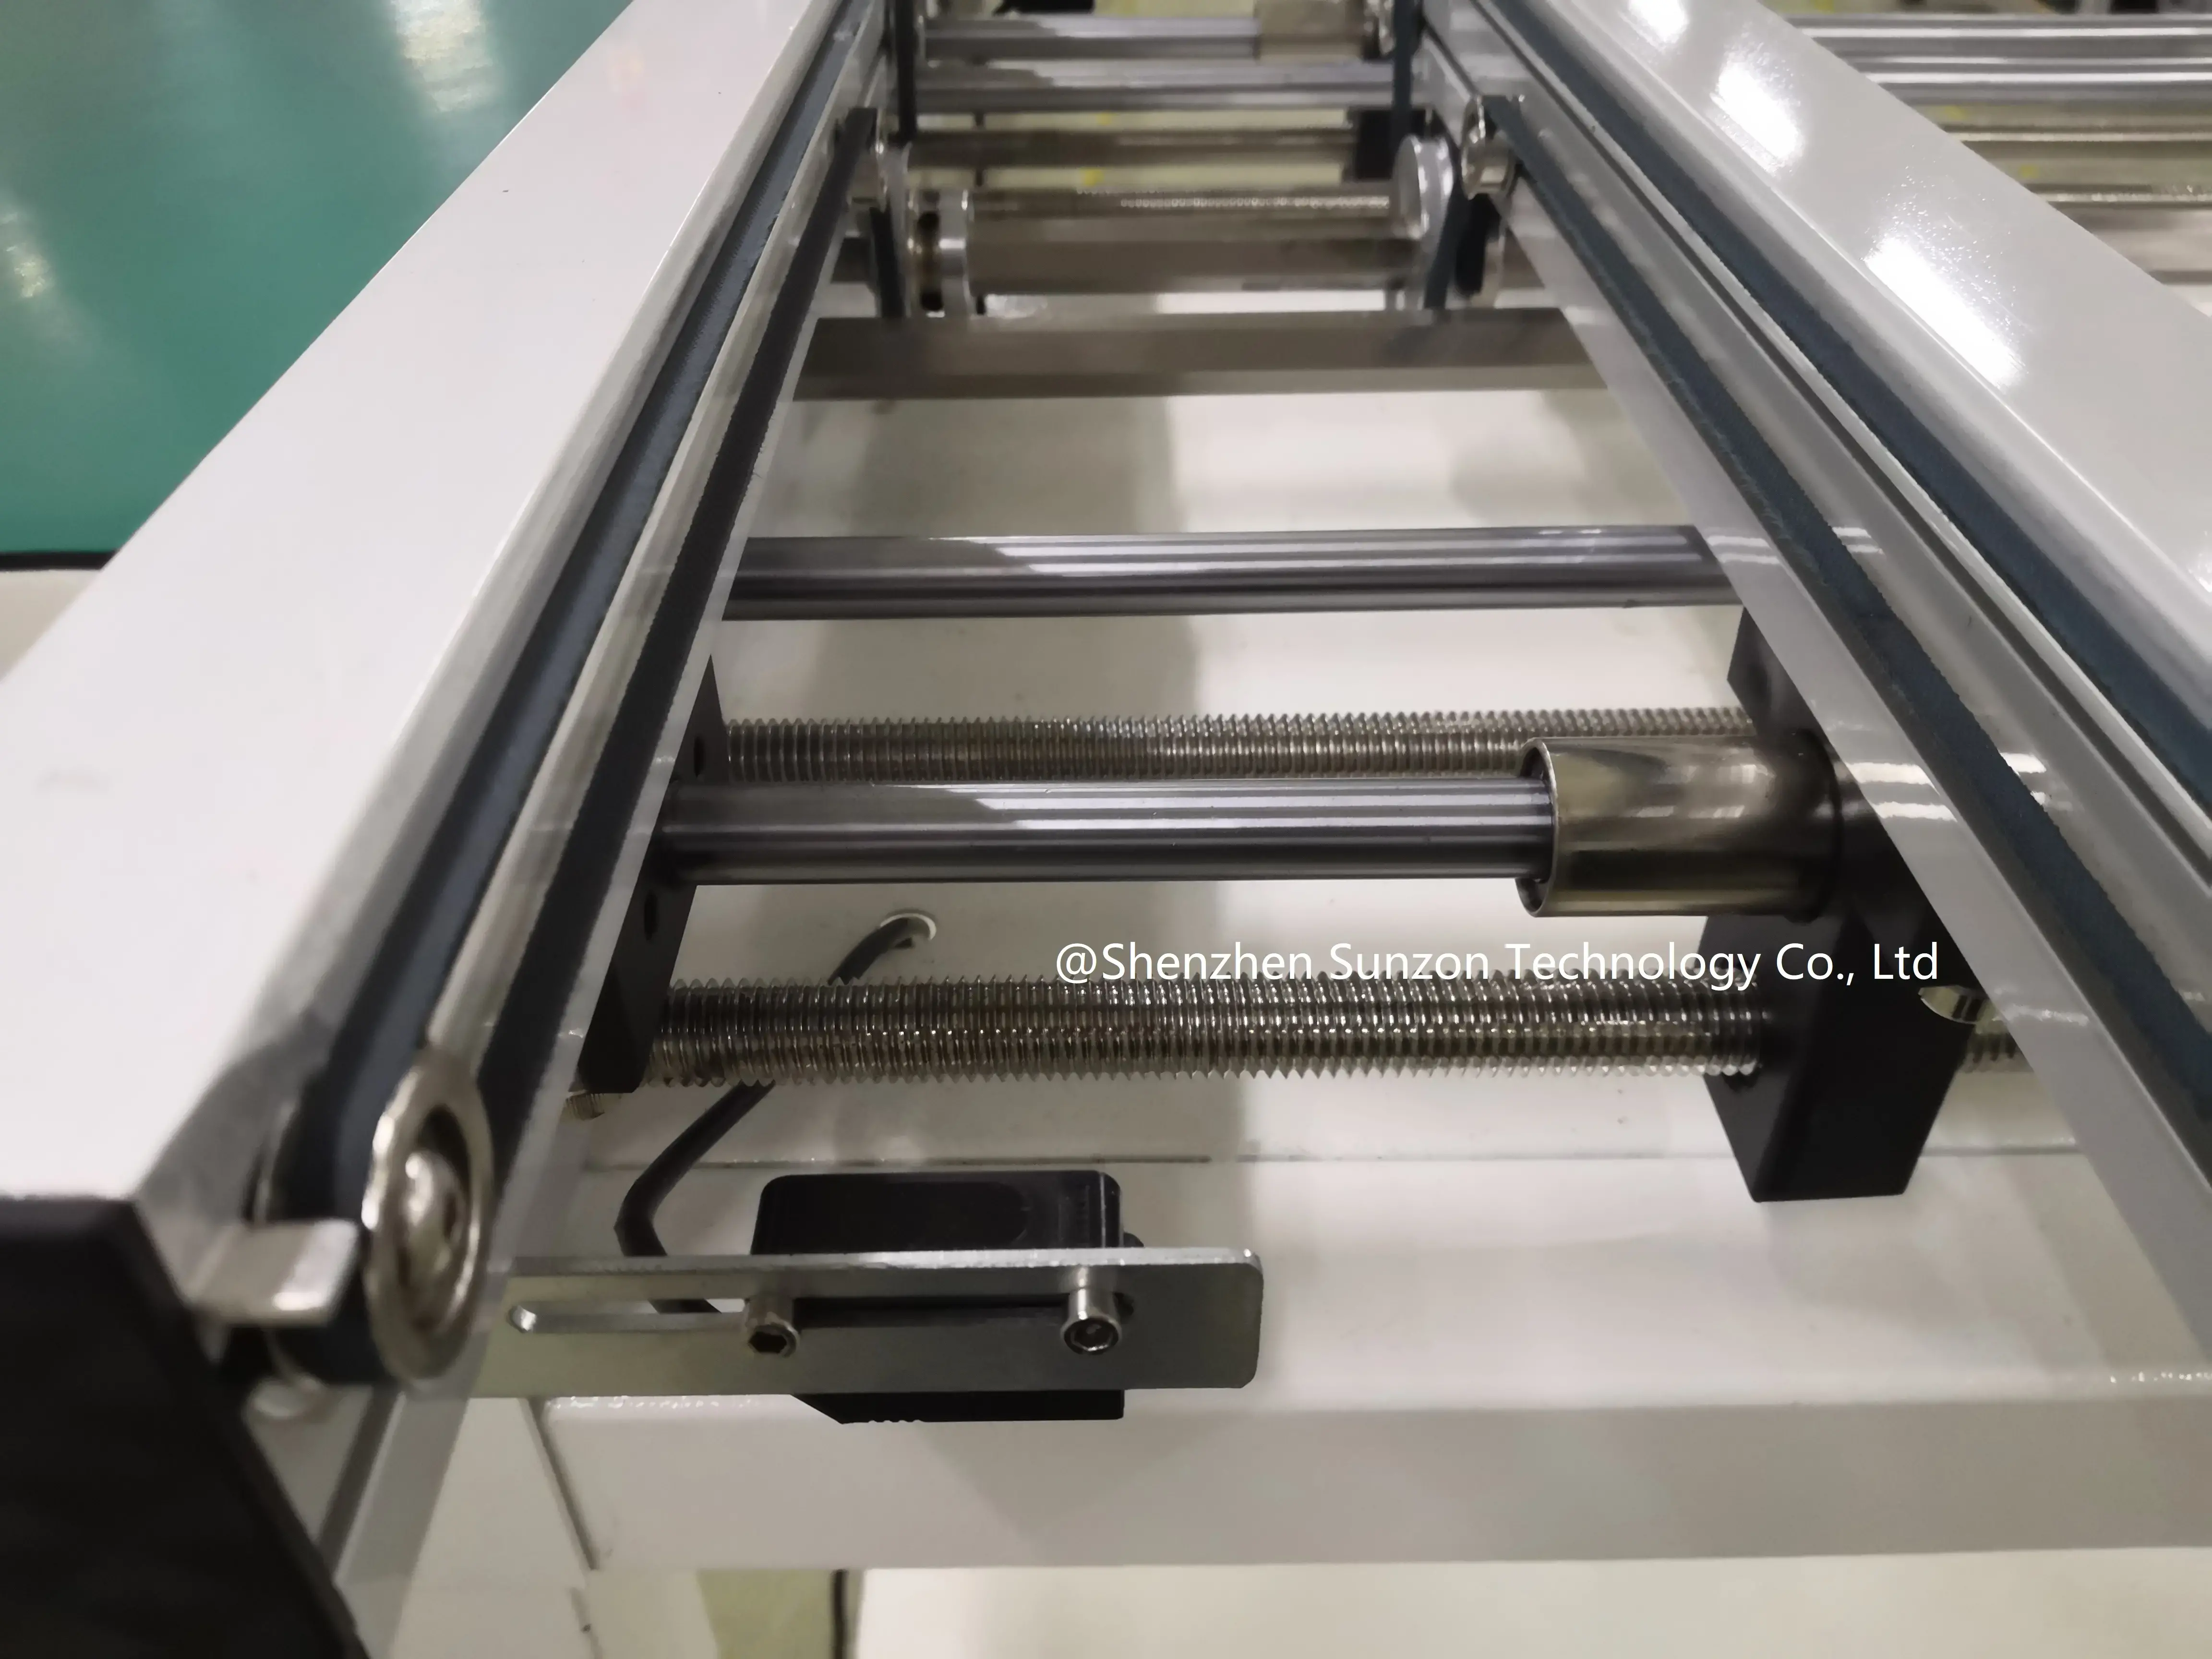 NC-BC-330 Standard smt pcb conveyor SunzonTech pcb conveyor for smt production line